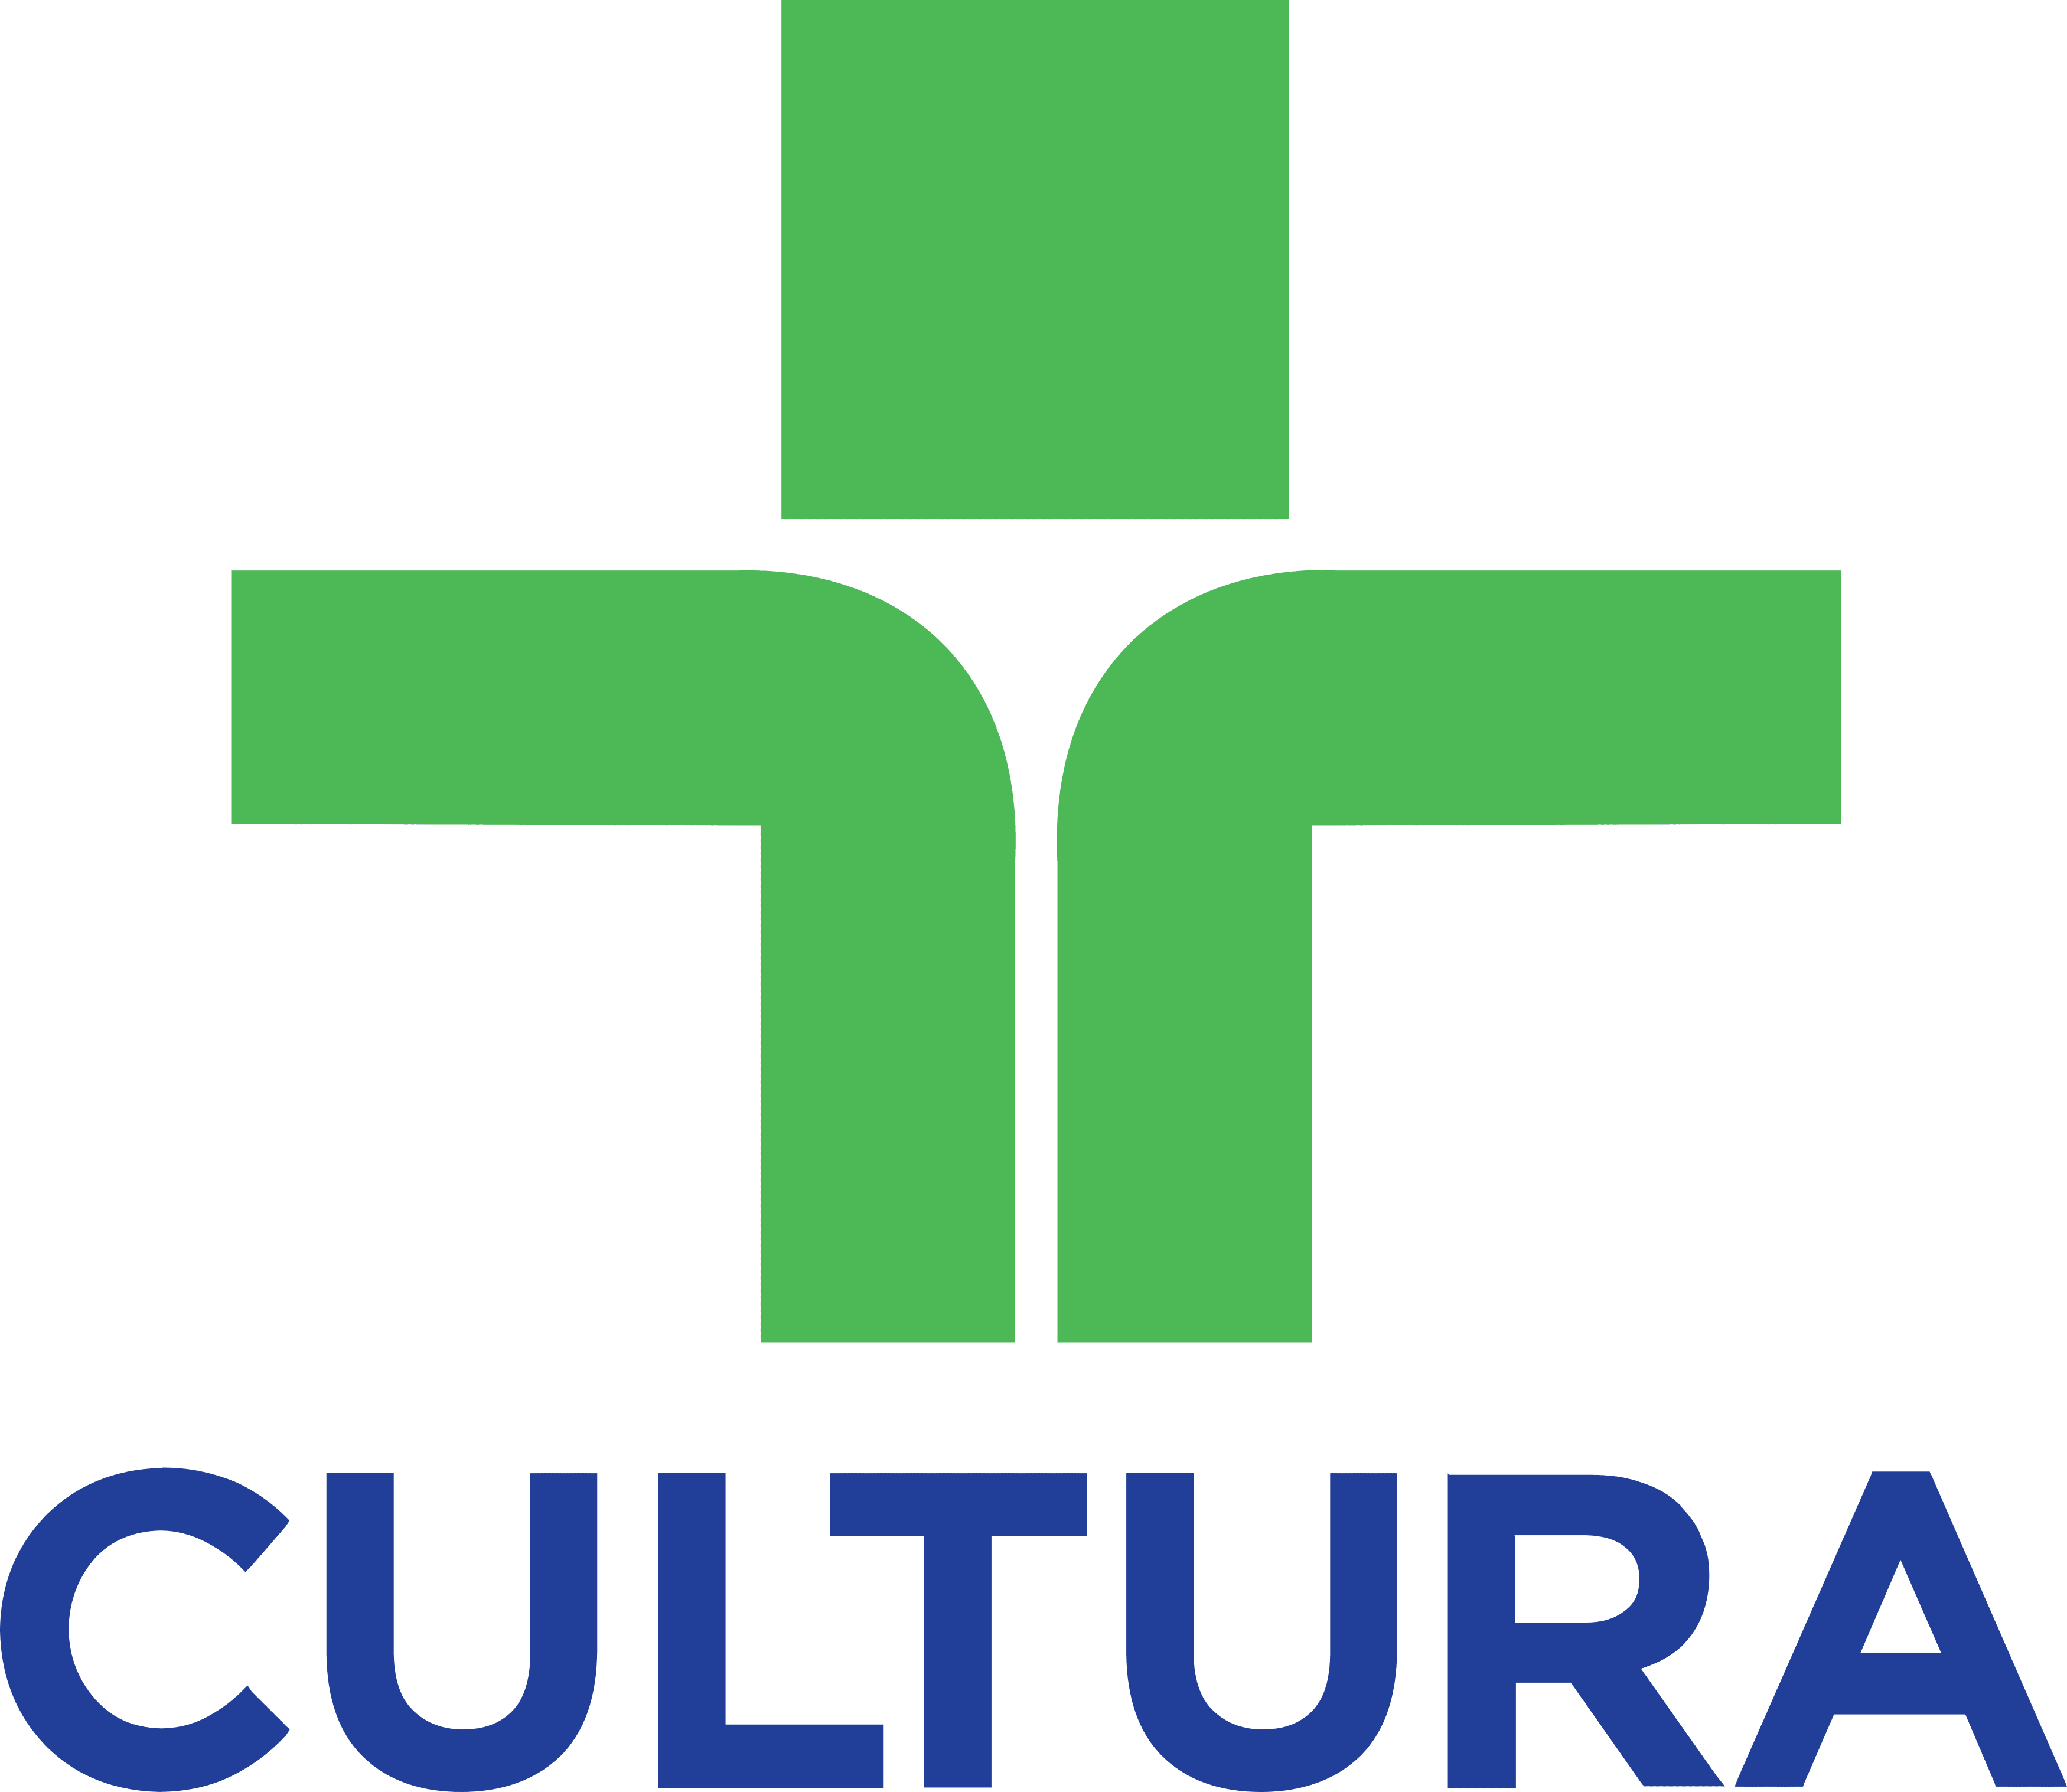 tv-cultura-logo (1)